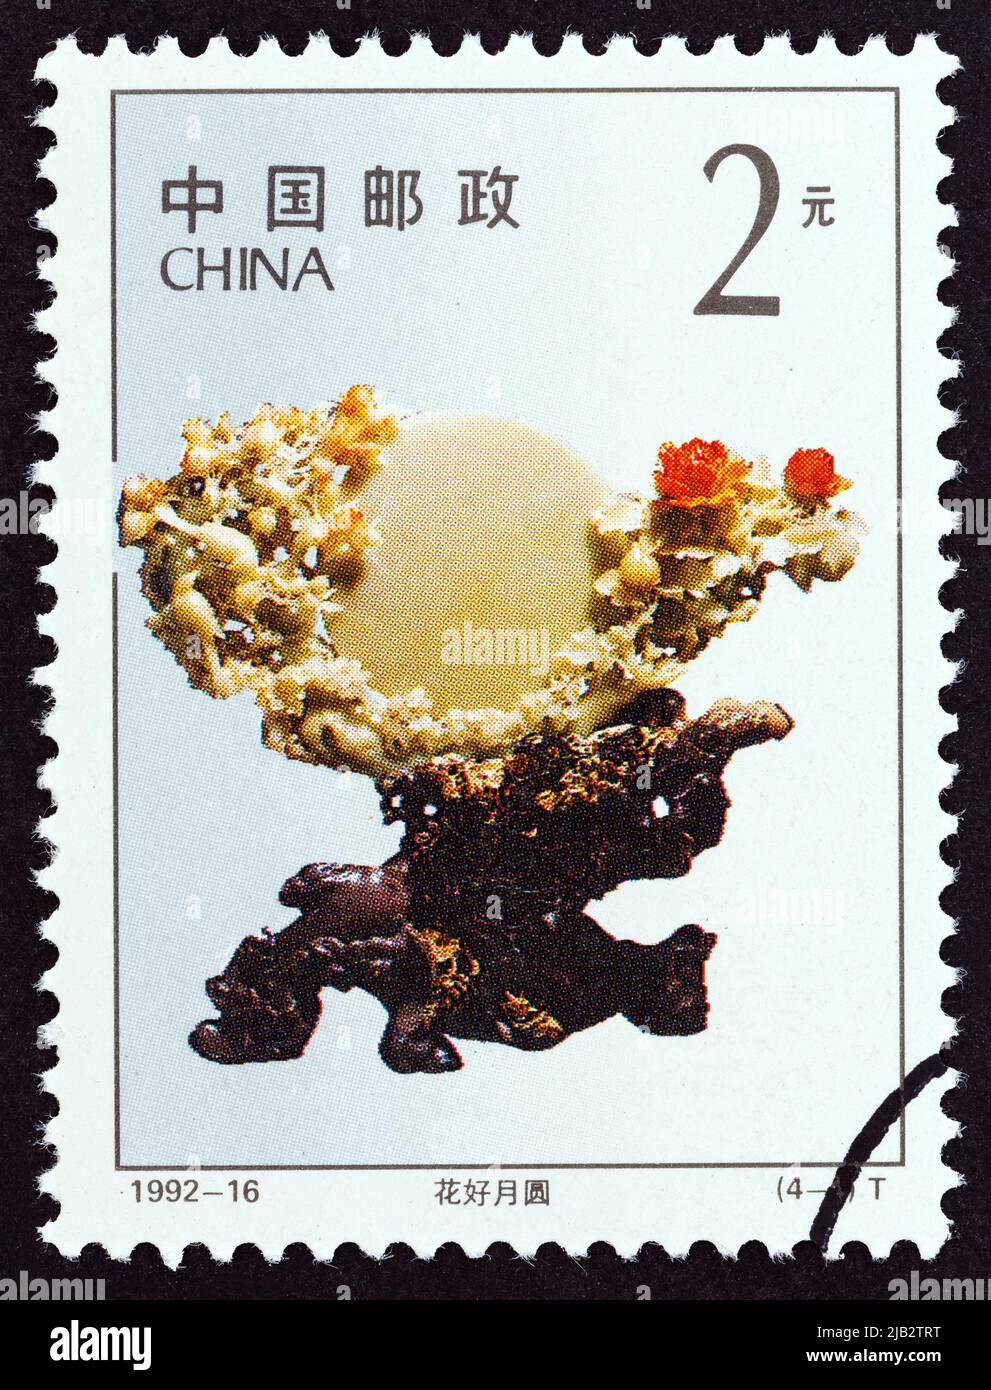 CHINE - VERS 1992 : un timbre imprimé en Chine à partir du numéro « sculptures en pierre de Qingtian » montre fleurs en fleurs et pleine lune ni Dongfang, vers 1992. Banque D'Images